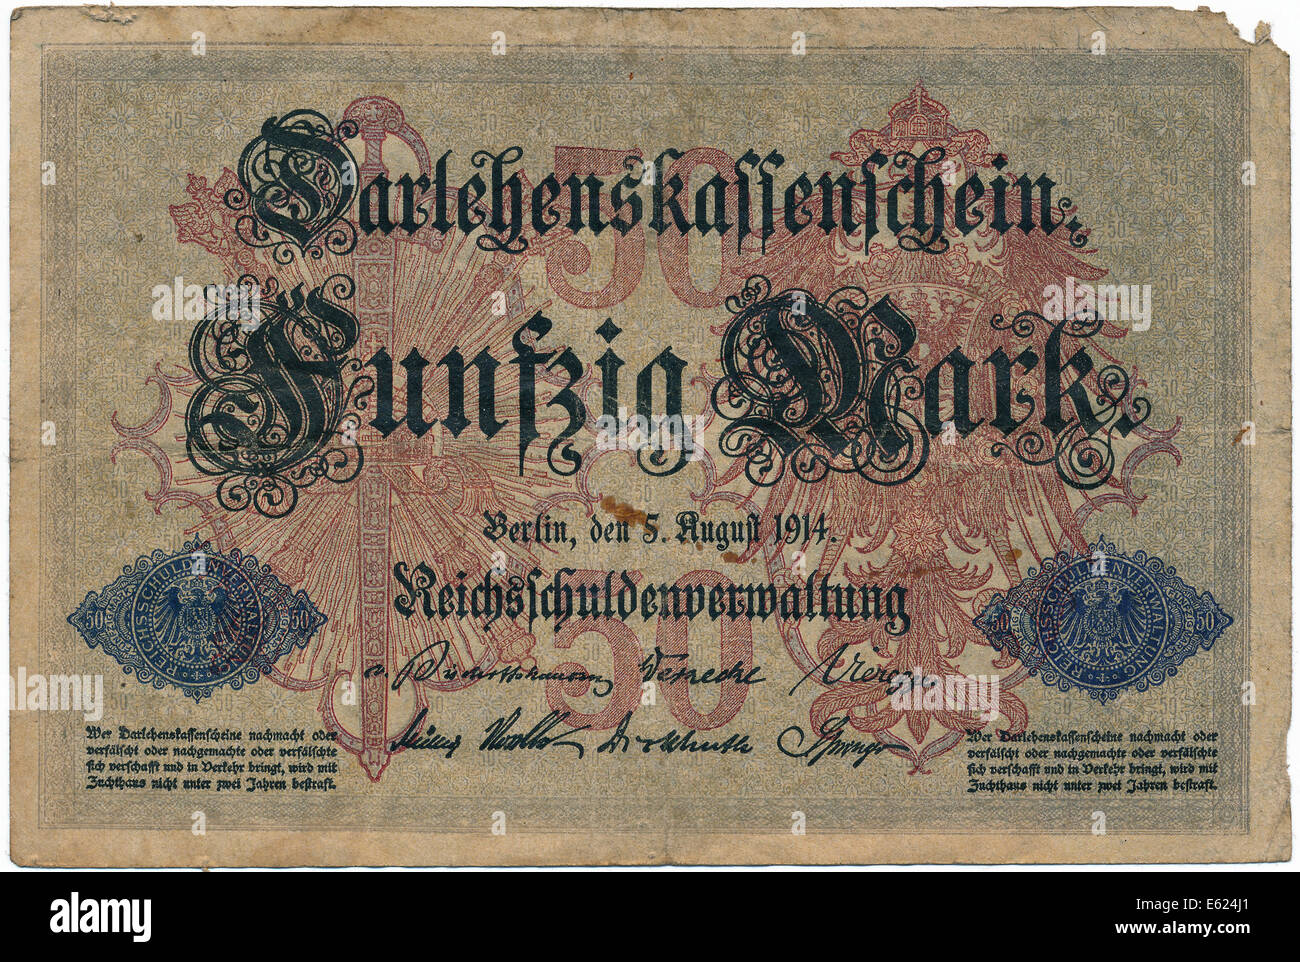 Old banknote, loan cash certificate, 50 marks, front, Reichsschuldenverwaltung, German Reich debt administration, 1914 Stock Photo